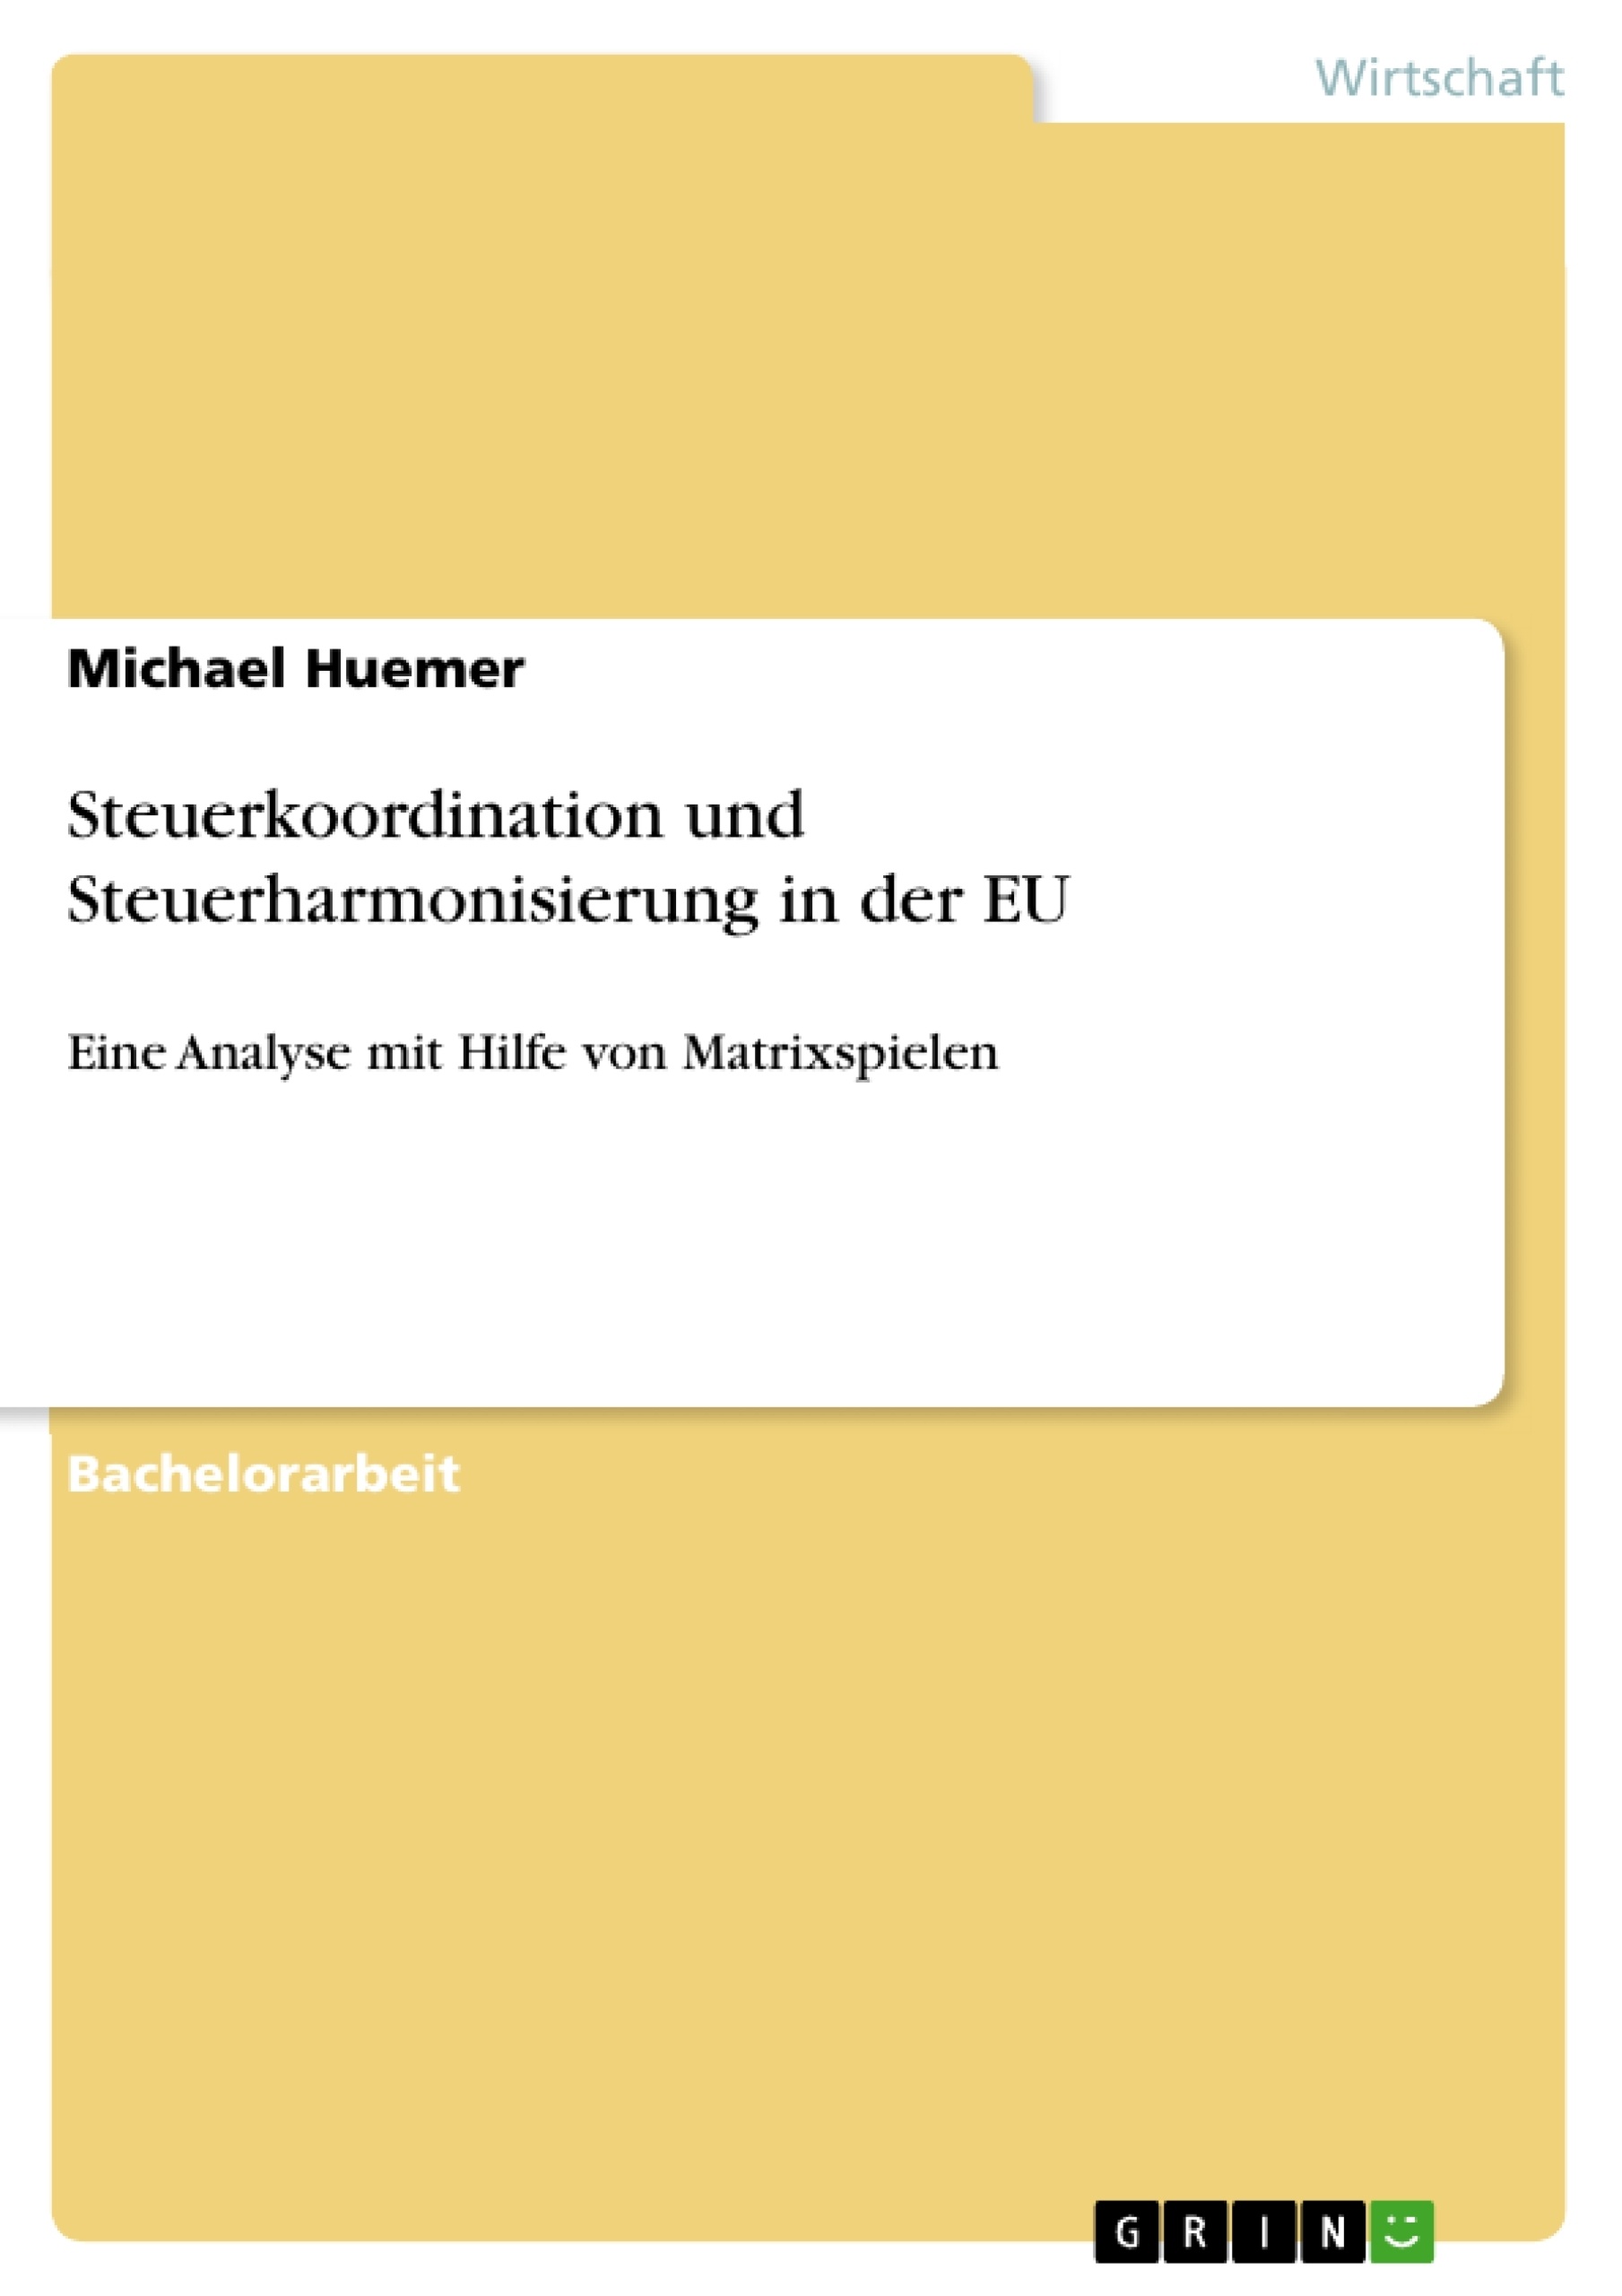 Title: Steuerkoordination und Steuerharmonisierung in der EU